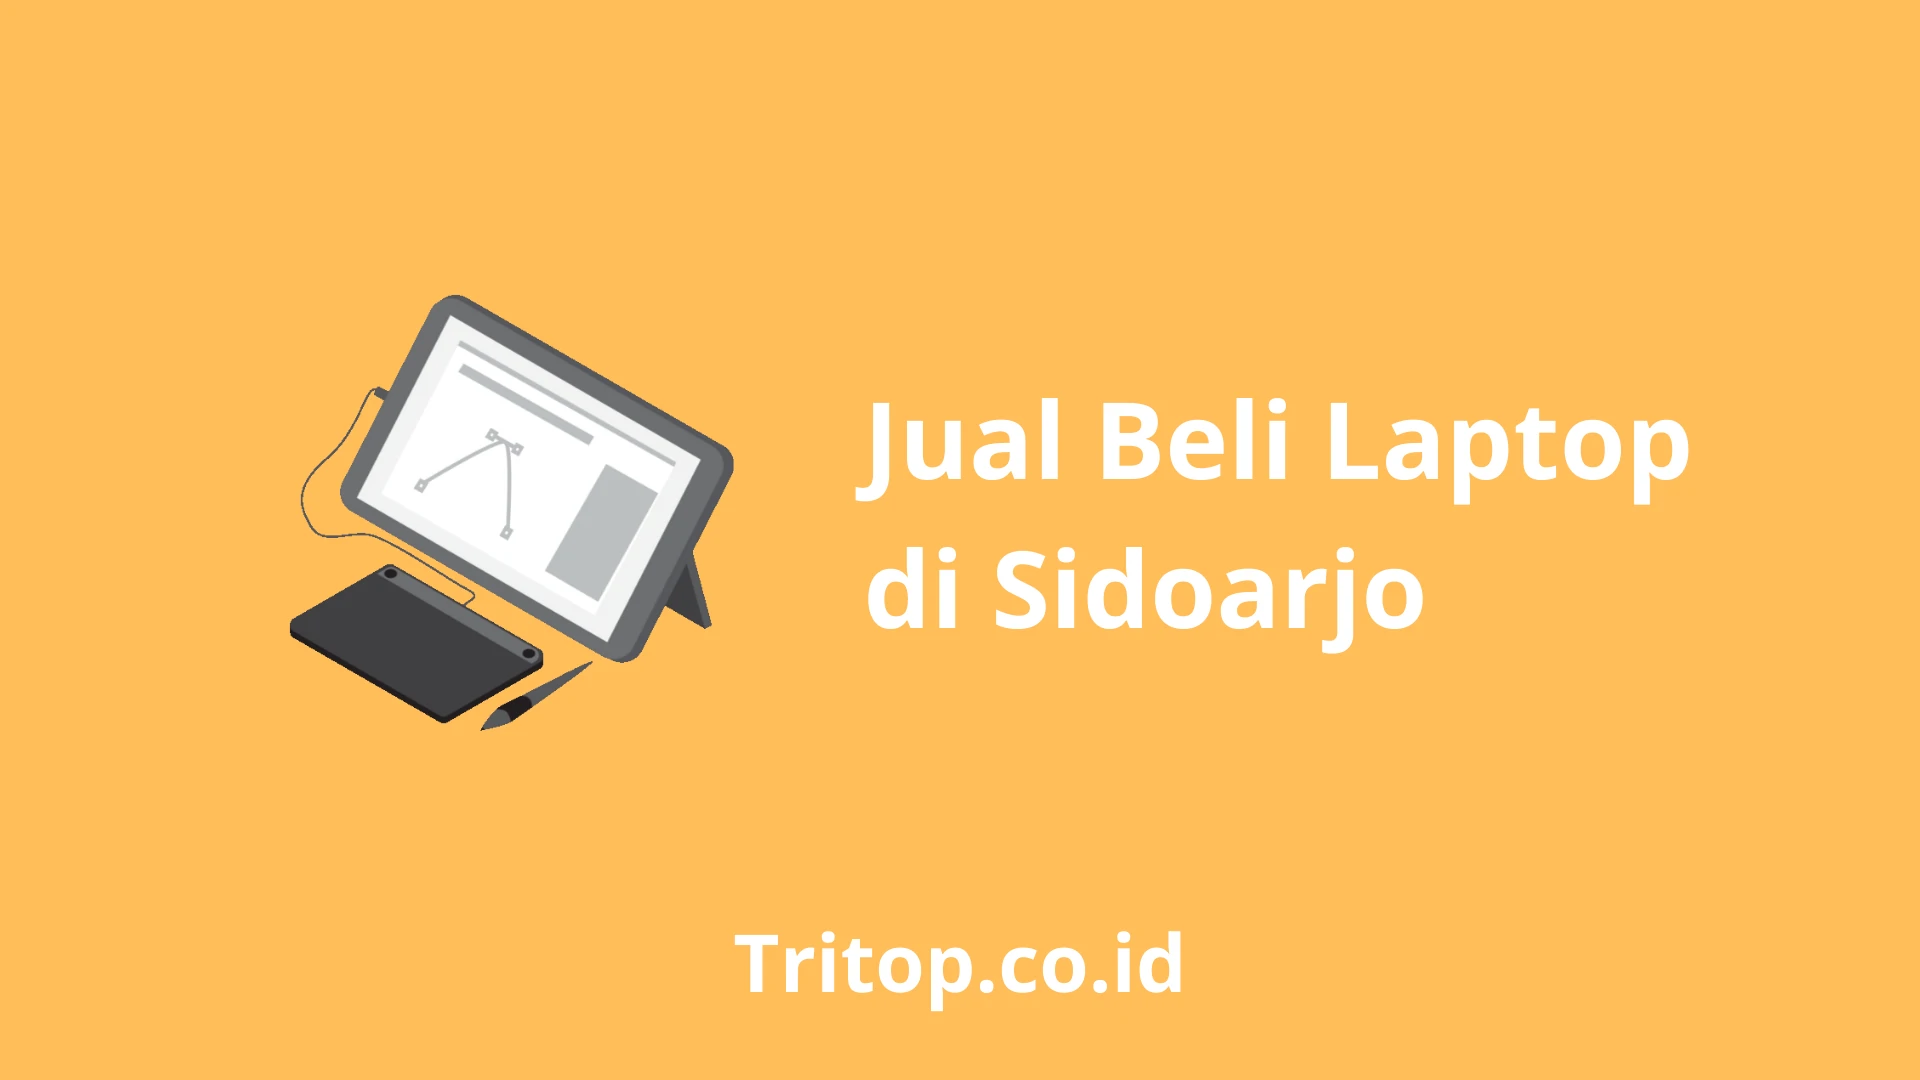 Jual Beli Laptop Sidoarjo tritop.co.id